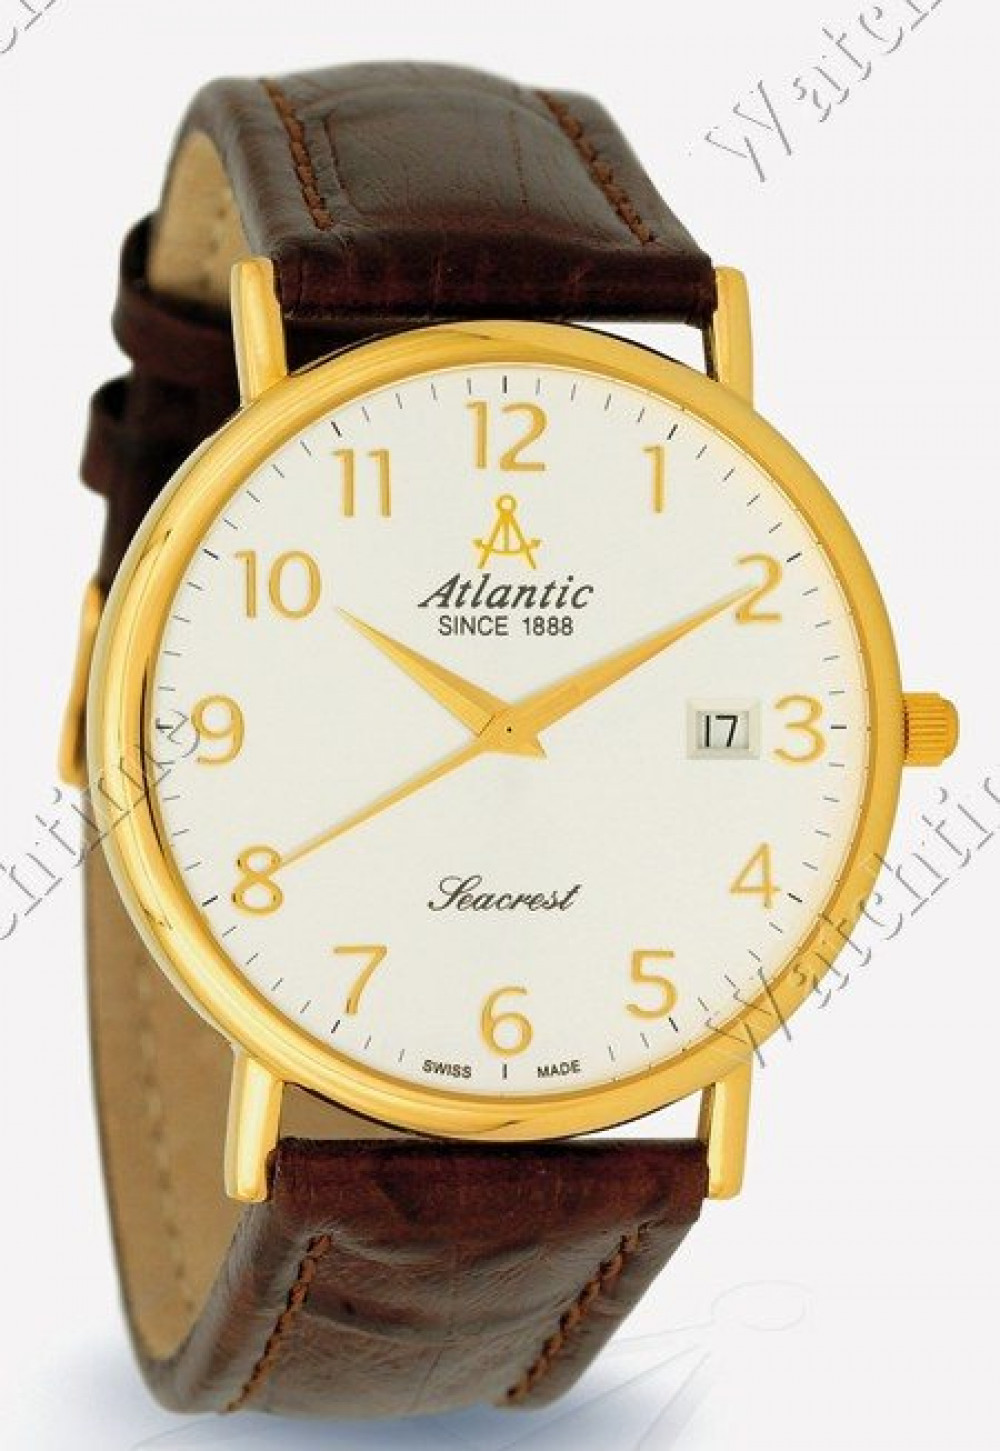 Zegarek firmy Atlantic, model Seacrest